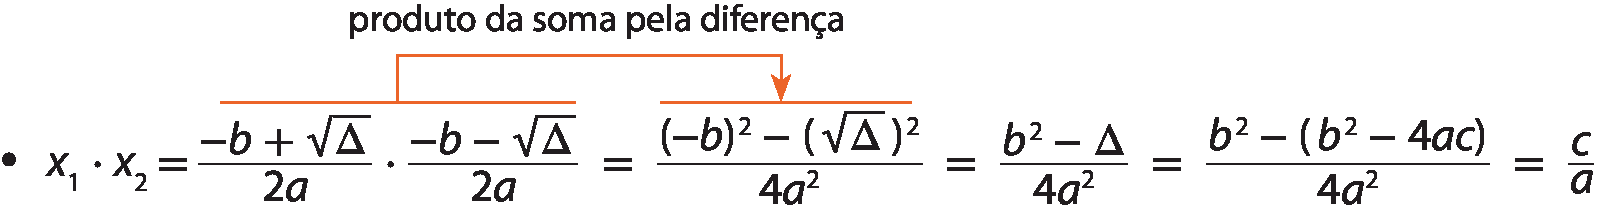 Esquema. Sentença matemática. x1 vezes x2 é igual a fração de numerador menos b mais raiz quadrada de delta, fim da raiz, e denominador 2a, fim da fração vezes fração de numerador menos b menos raiz quadrada de delta, fim da raiz, e denominador 2a, fim da fração, é igual a fração de numerador, abre parênteses, menos b, fecha parênteses, elevado ao quadrado, menos, abre parênteses, raiz quadrada de delta, fecha parênteses, elevado ao quadrado, e denominador 4 a elevado ao quadrado, fim da fração, é igual a fração de numerador b elevado ao quadrado menos delta, e denominador 4 a elevado ao quadrado, fim da fração, é igual a fração de numerador b elevado ao quadrado, menos, abra parênteses, b elevado ao quadrado menos 4ac, fecha parênteses, e denominador 4 a elevado ao quadrado, fim da fração, é igual a fração c sobre a. Seta indo de fração de numerador menos b mais raiz quadrada de delta, fim da raiz, e denominador 2a, fim da fração vezes fração de numerador menos b menos raiz quadrada de delta, fim da raiz, e denominador 2a, fim da fração, para fração de numerador, abre parênteses, menos b, fecha parênteses, elevado ao quadrado, menos, abre parênteses, raiz quadrada de delta, fecha parênteses, elevado ao quadrado, e denominador 4 a elevado ao quadrado, fim da fração, com a indicação: produto da soma pela diferença.